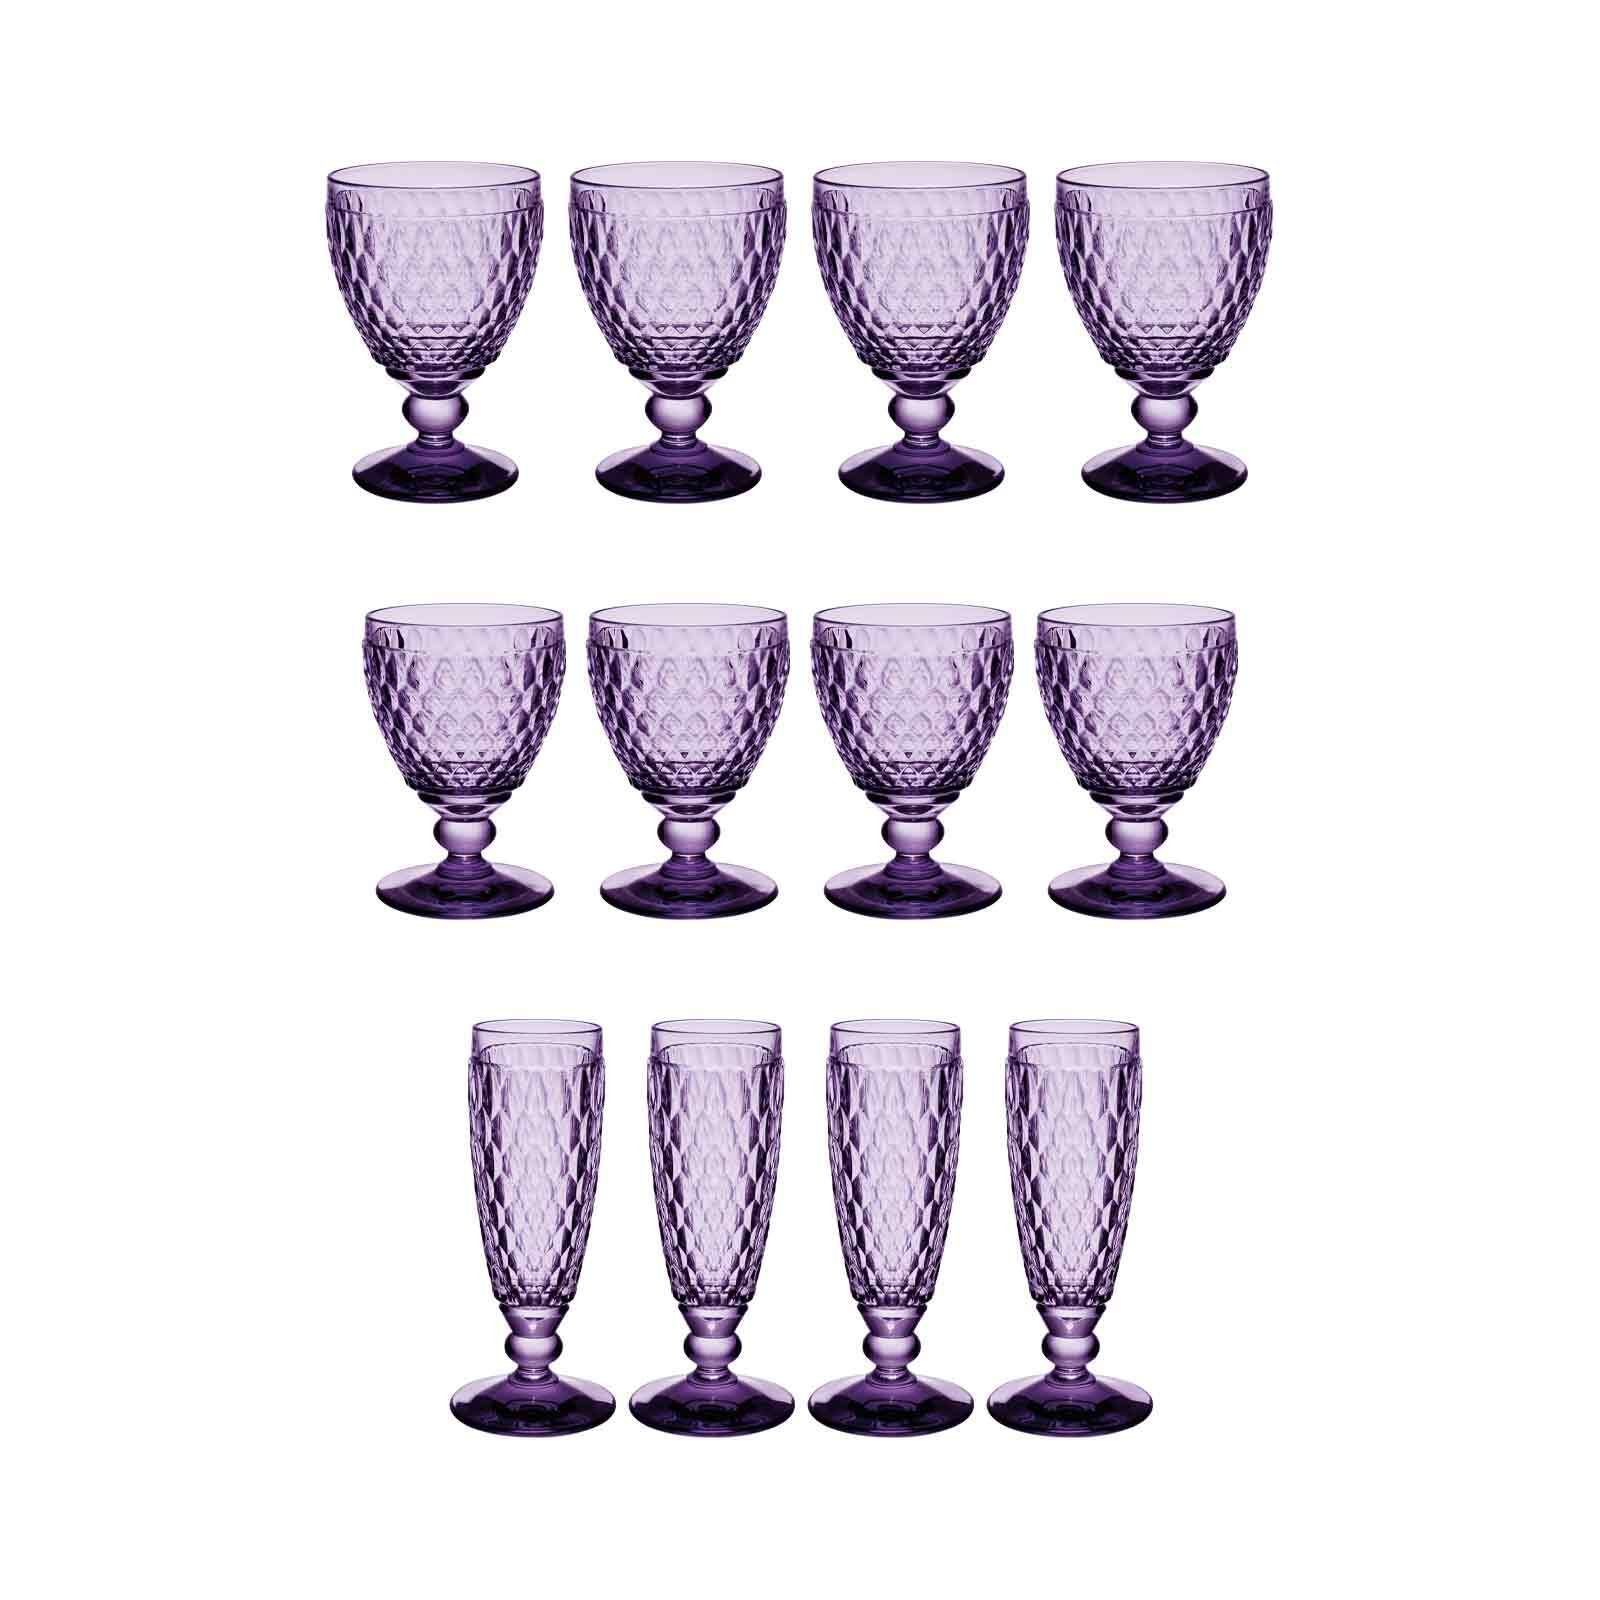 Villeroy & Boch Glas Boston Coloured Wein- und Sektgläser 12er Set, Glas lavender